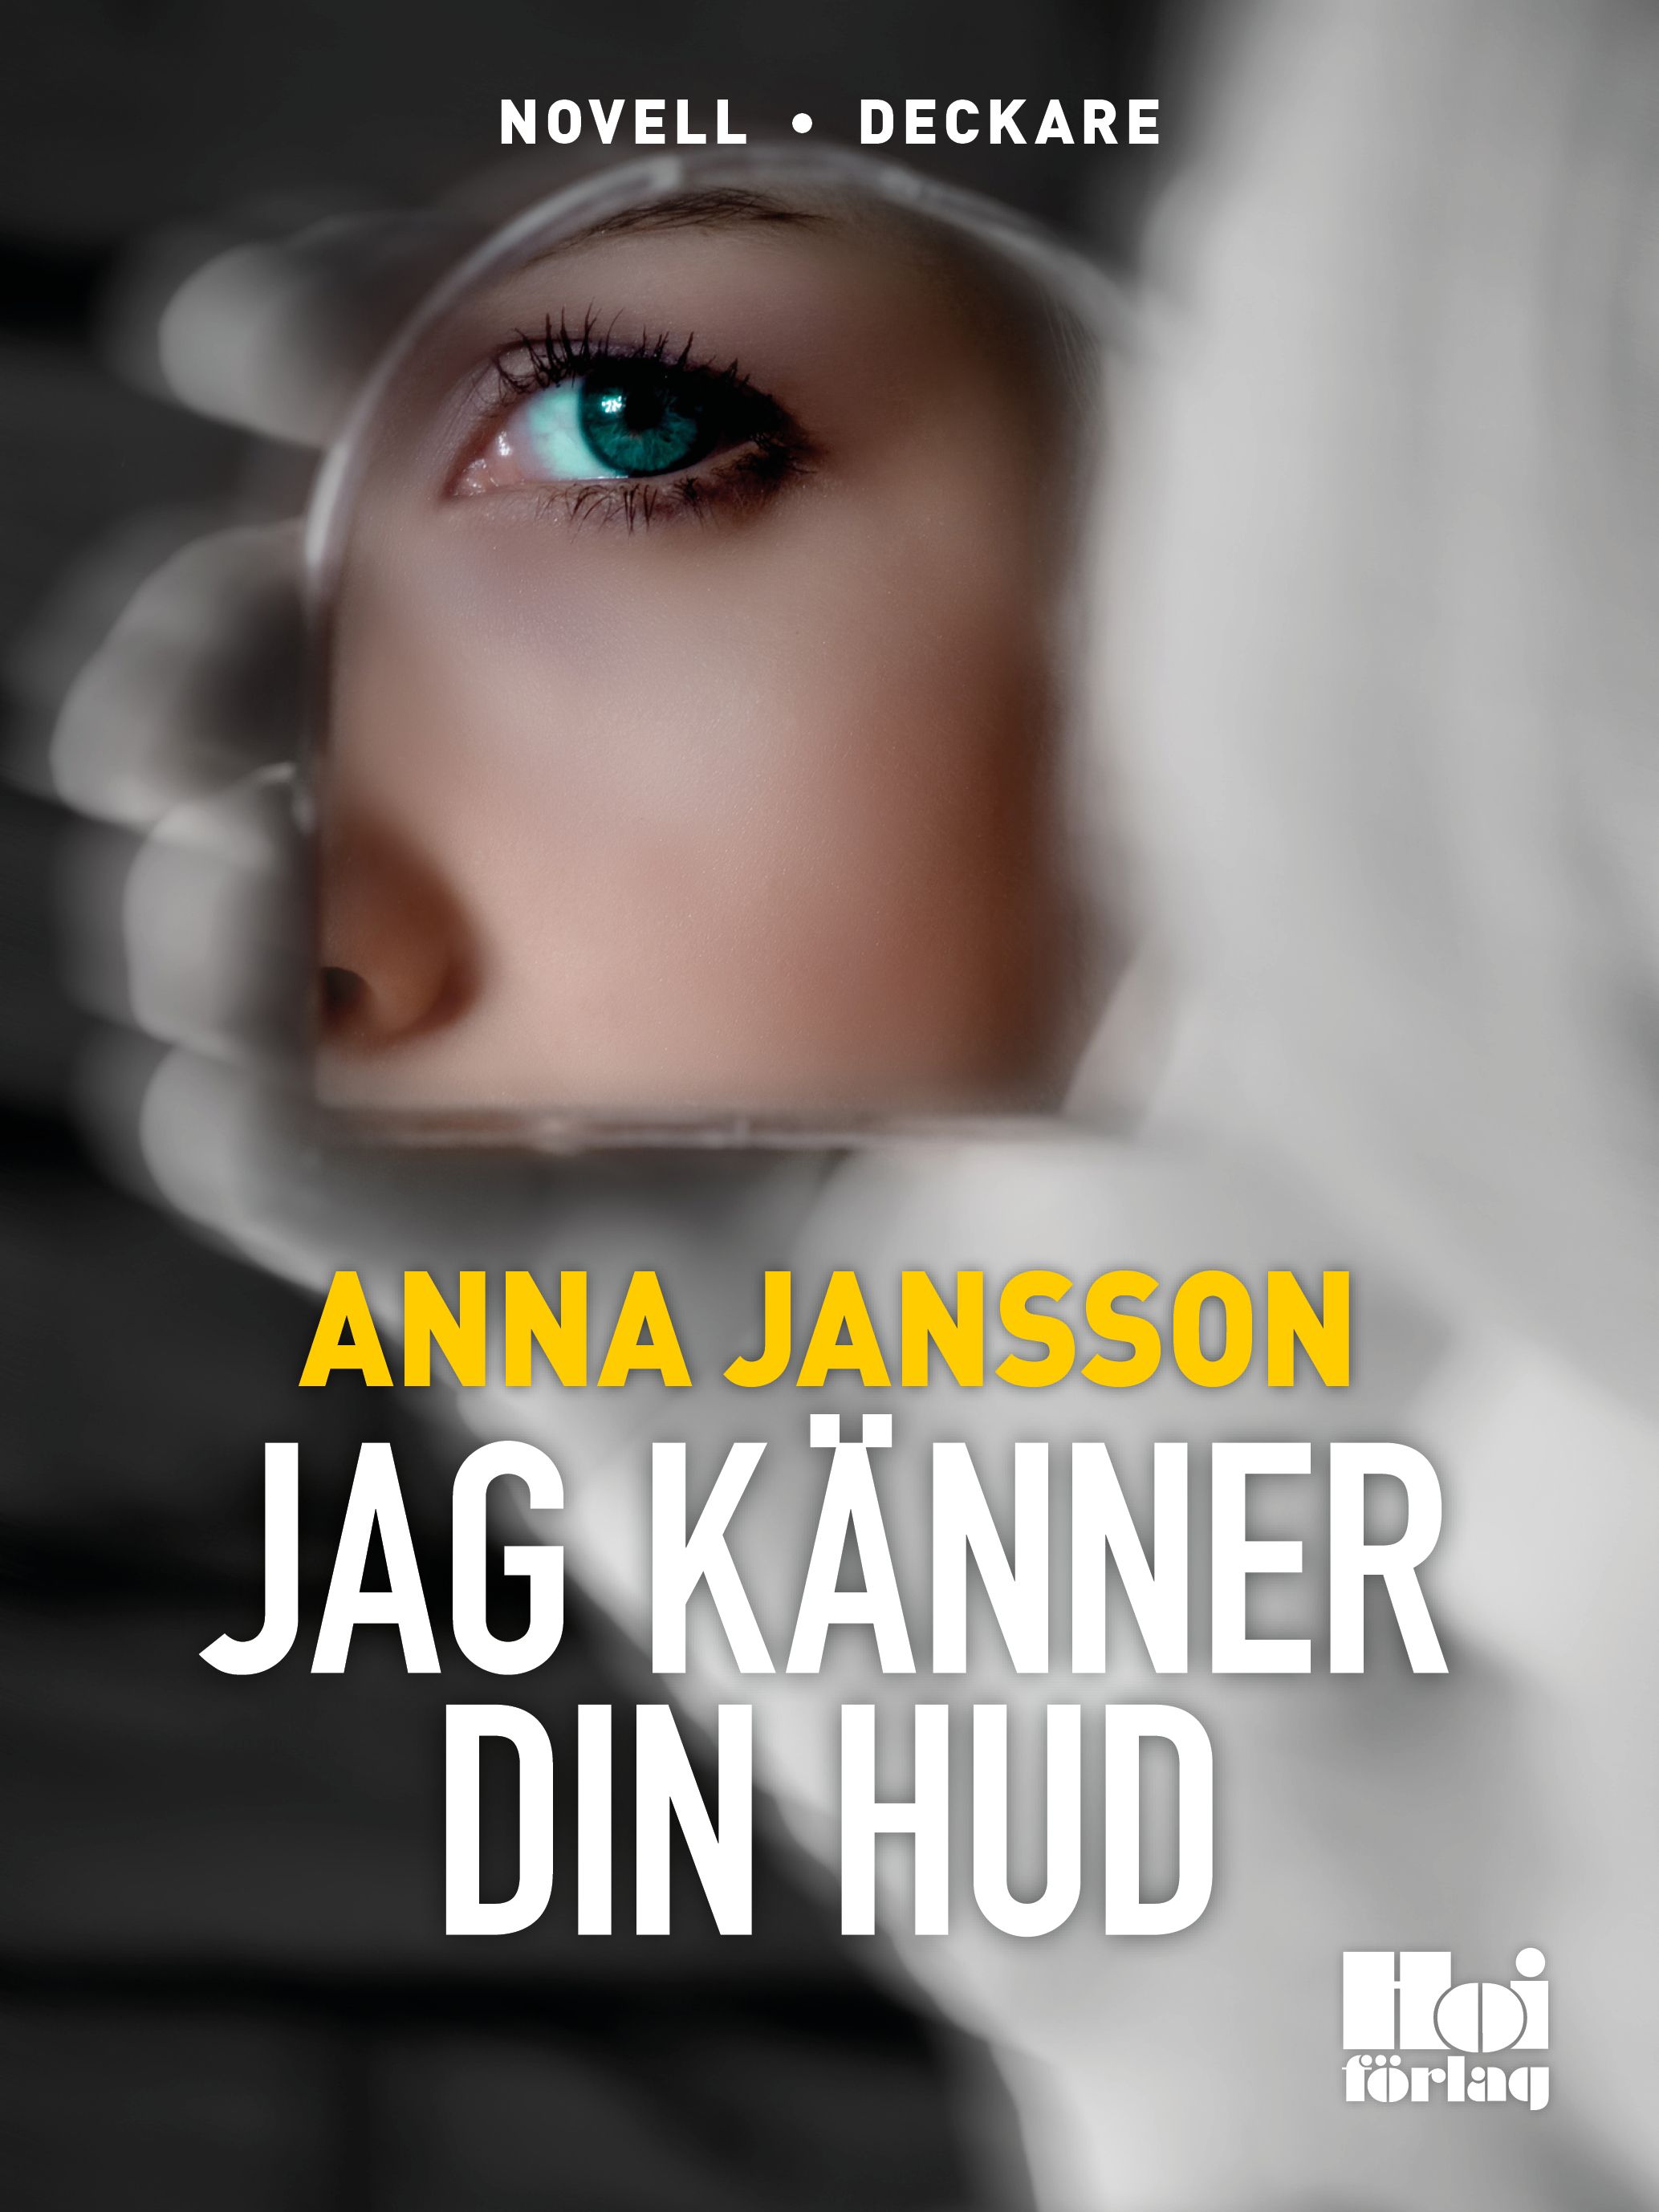 Jag känner din hud, e-bog af Anna Jansson